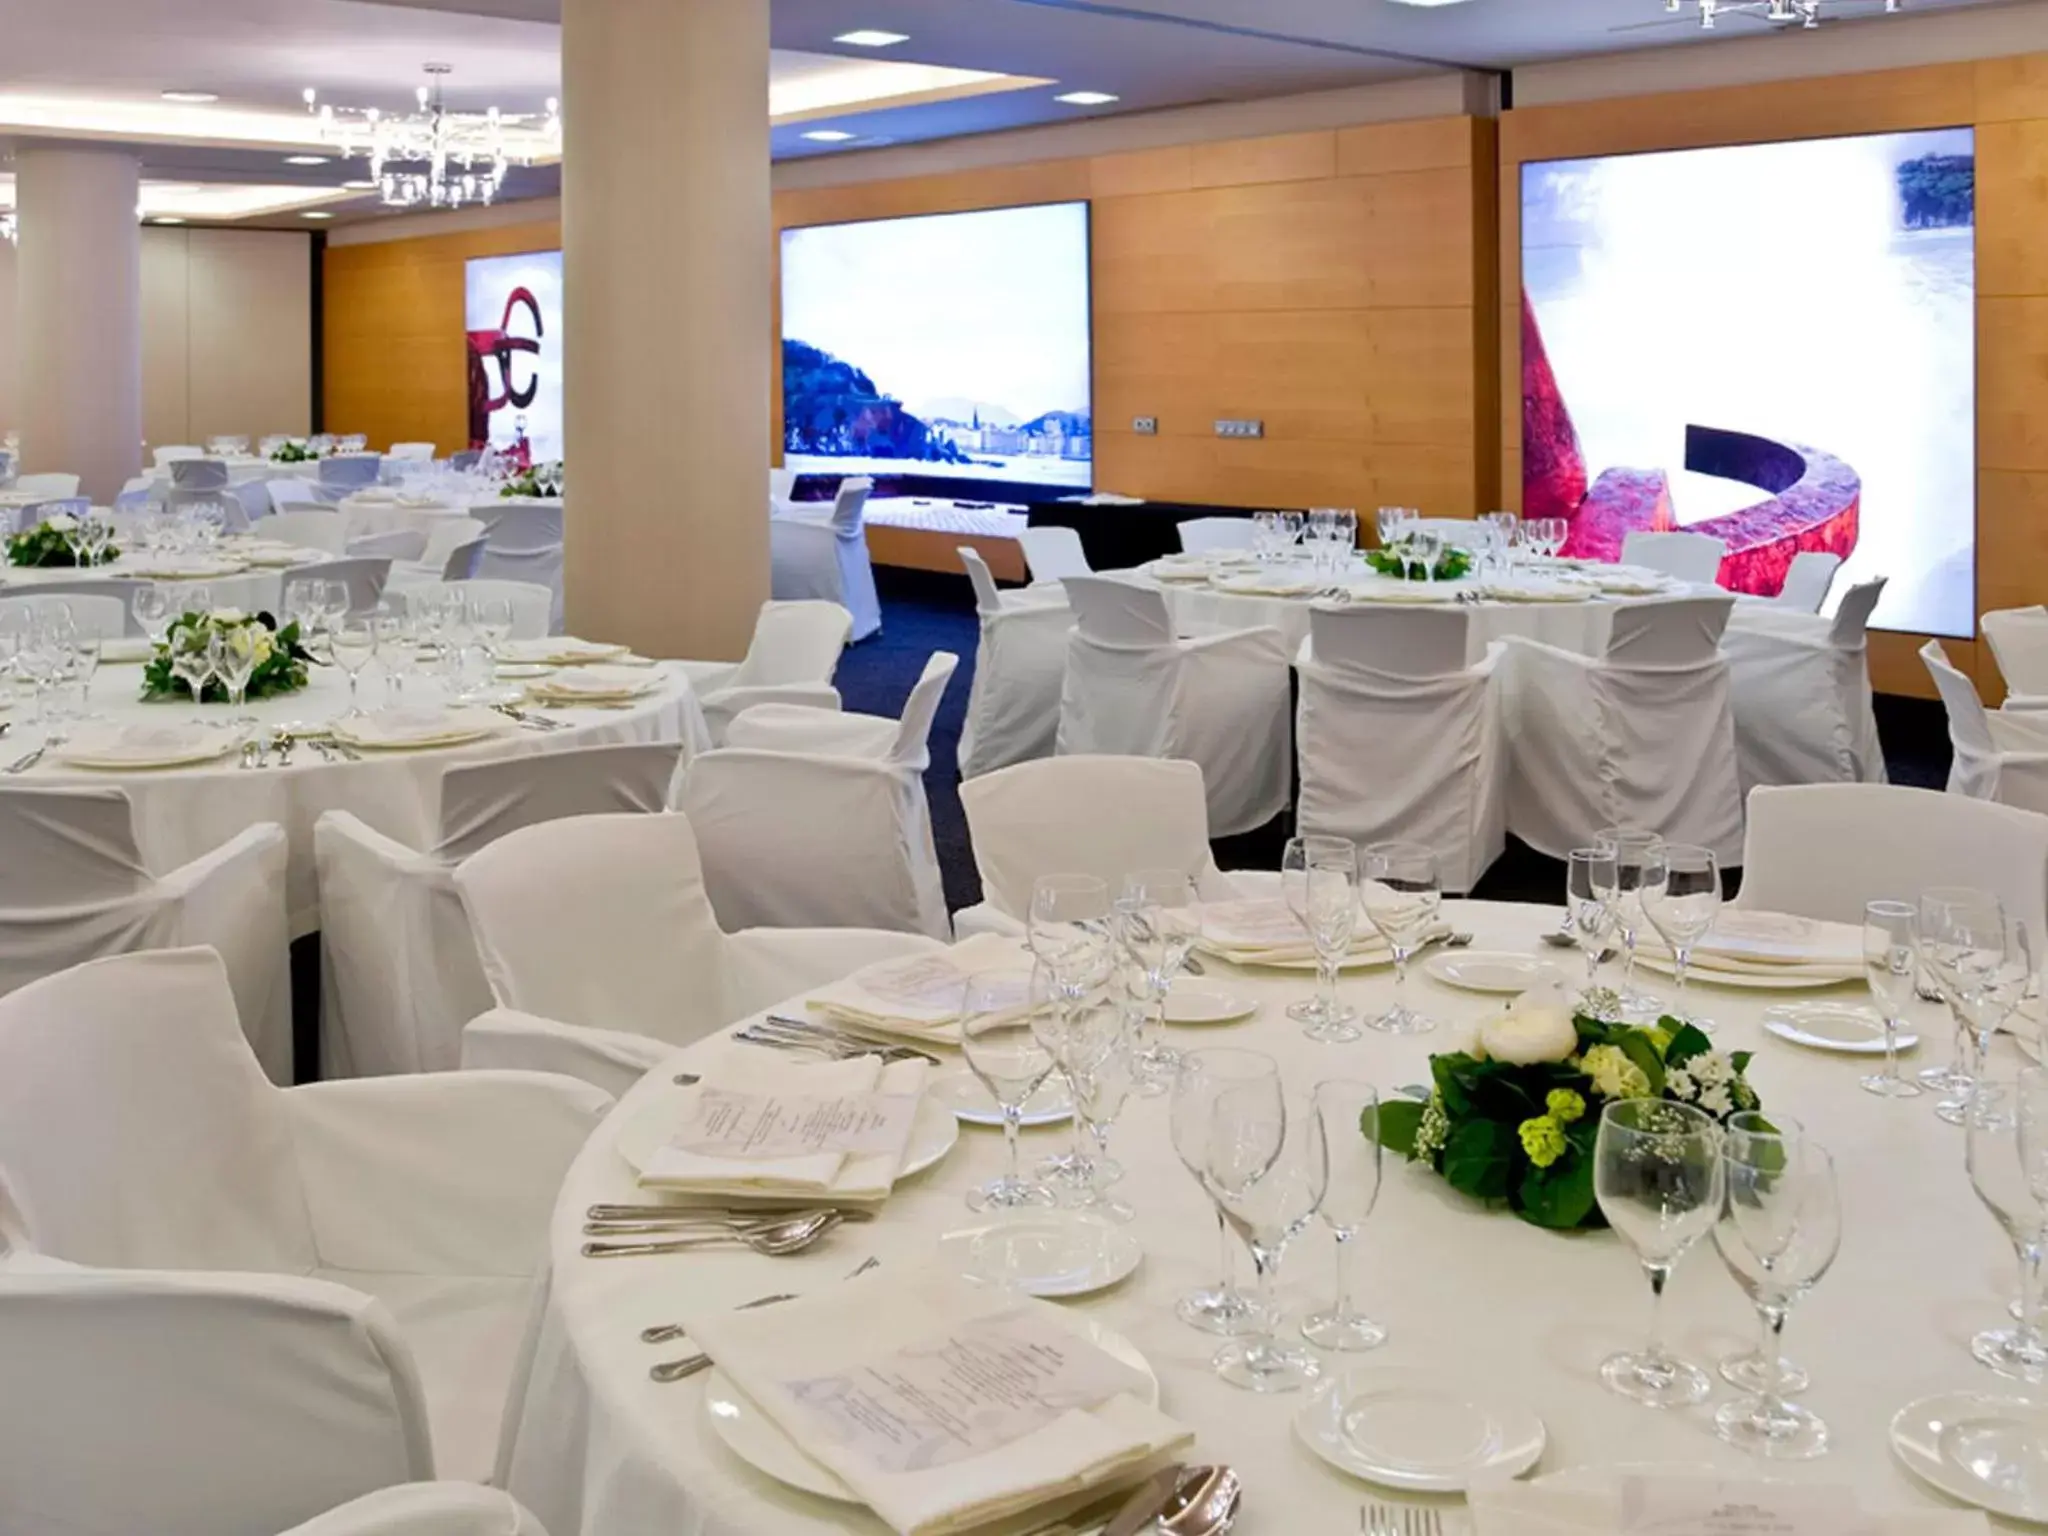 Banquet/Function facilities, Banquet Facilities in Hotel Silken Amara Plaza